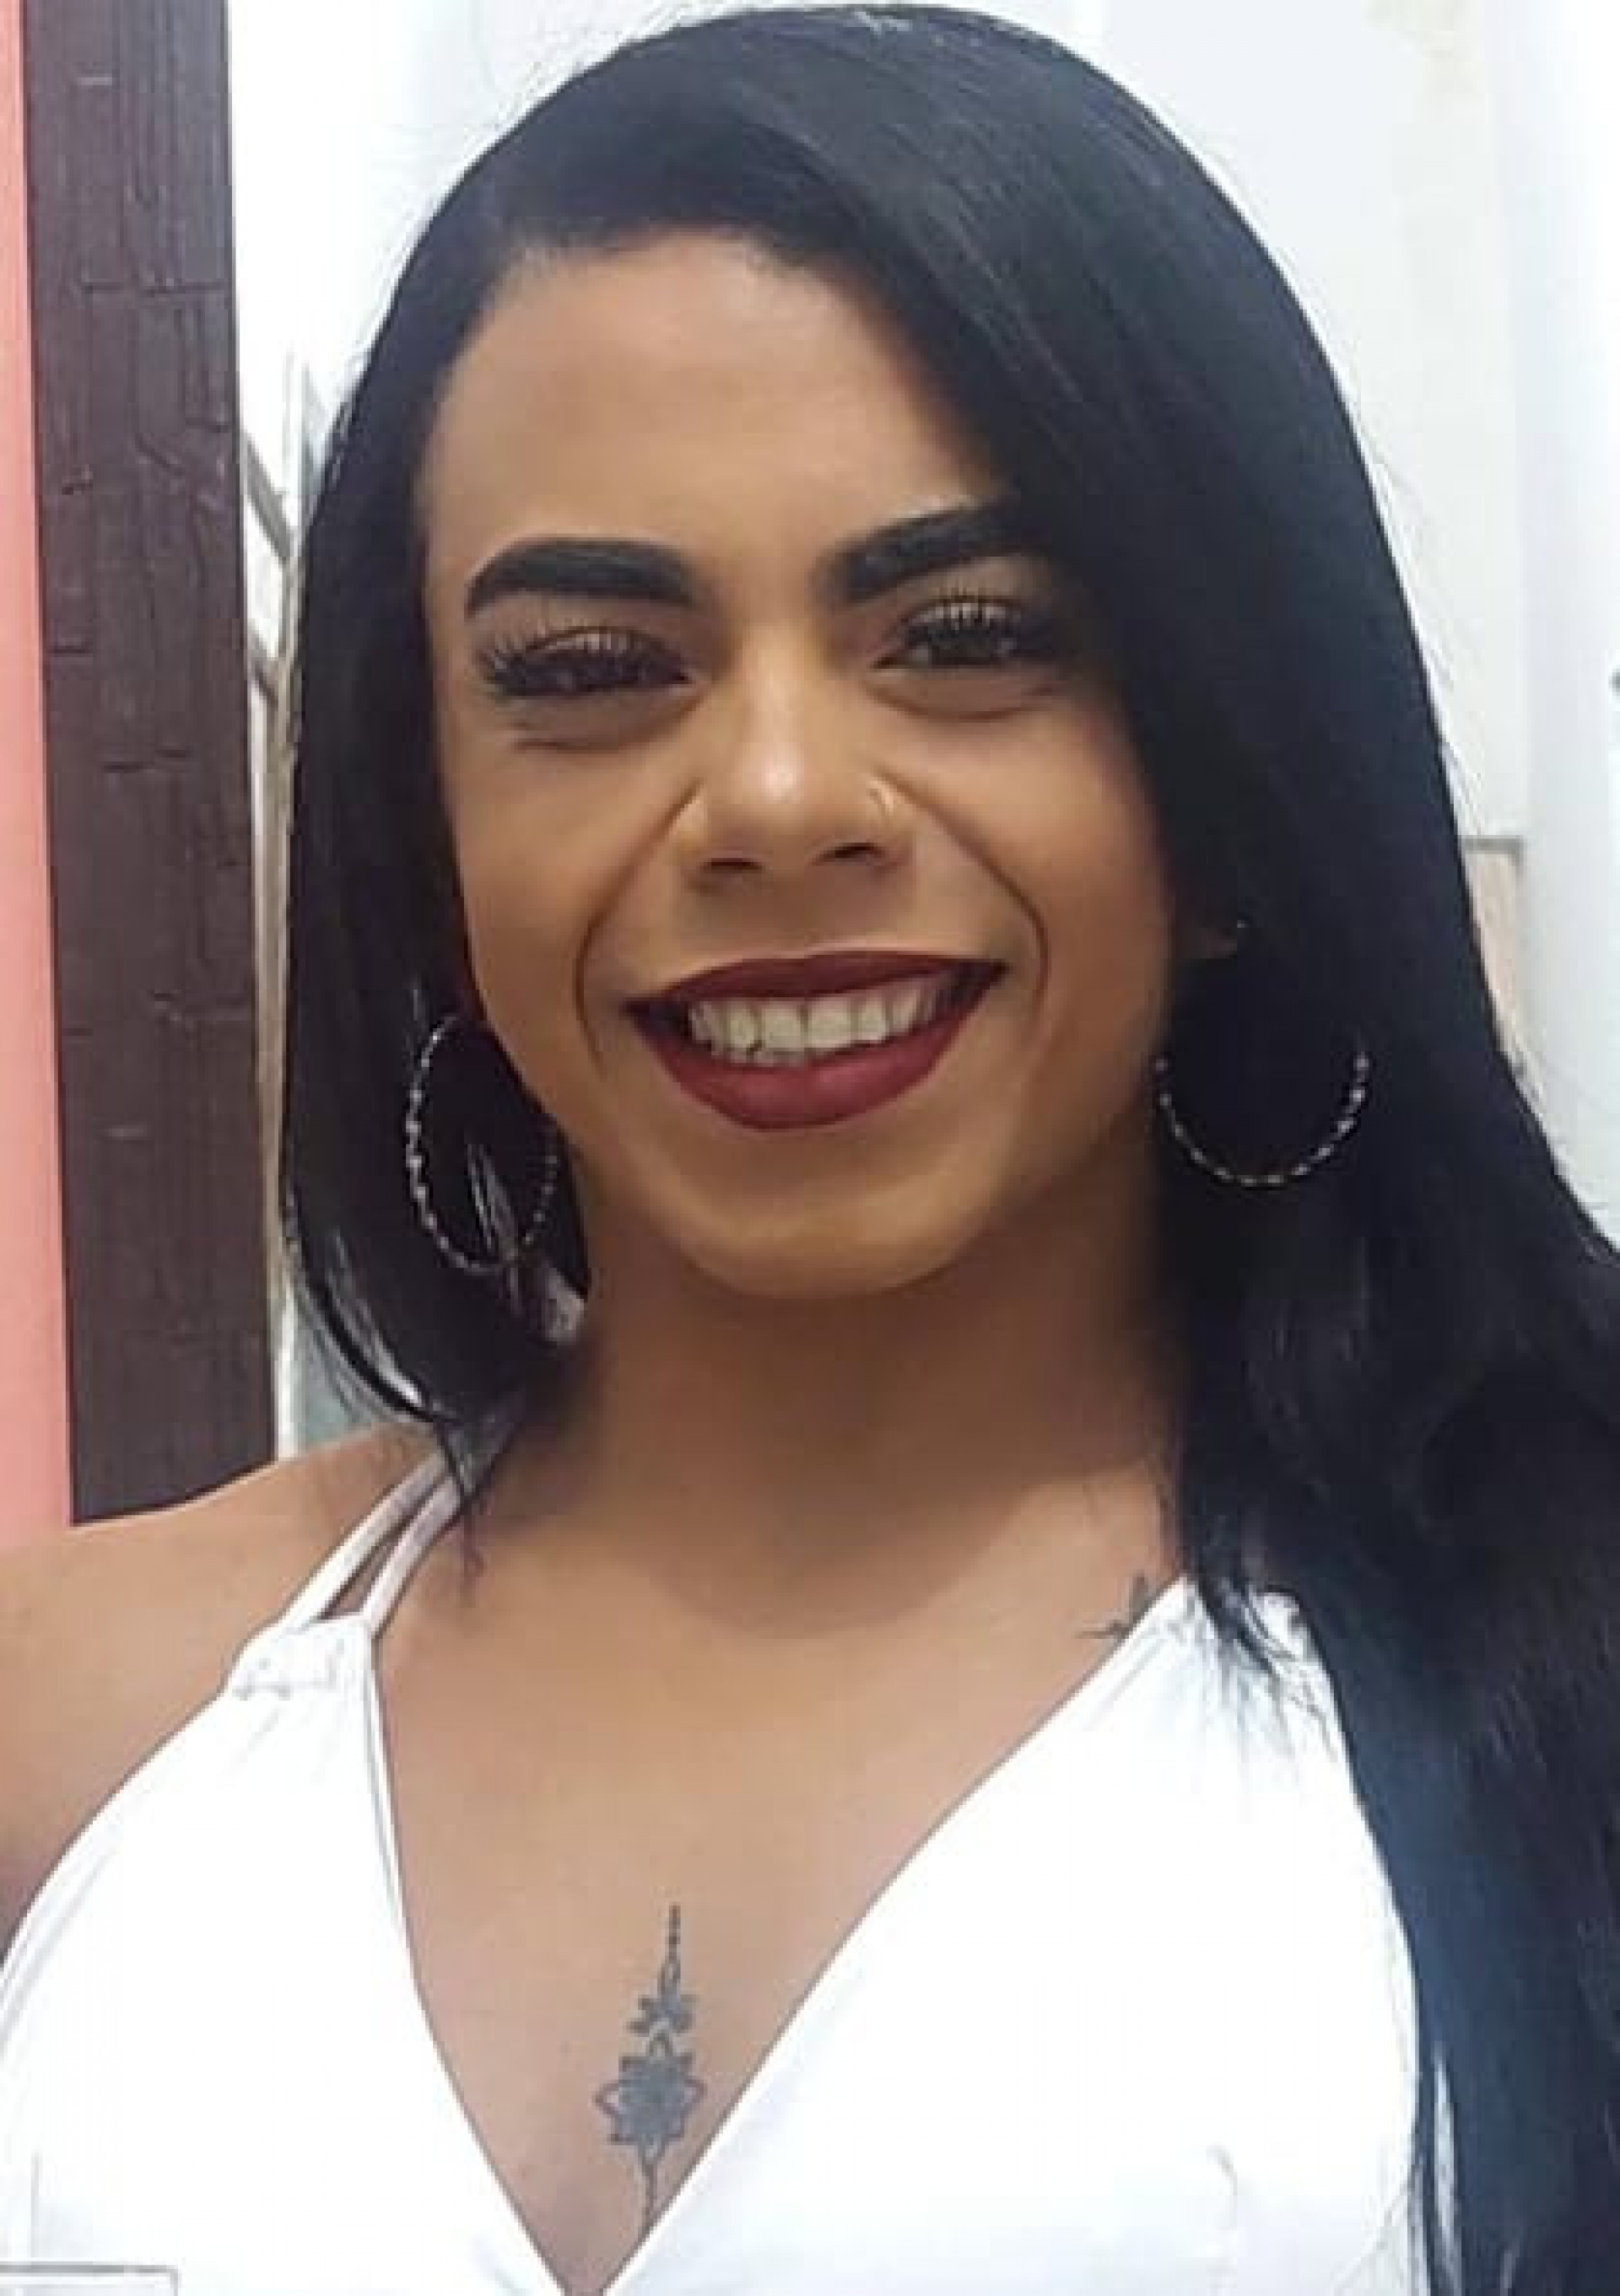 Fisiculturista Camila Anjos, de 27 anos, está sumida desde o dia 12, após sair de casa e ir para academia, onde foi vista pela última vez saindo com uma mala em direção a um ponto de ônibus, em Nova Iguaçu, na Baixada Fluminense   - Arquivo Pessoal 